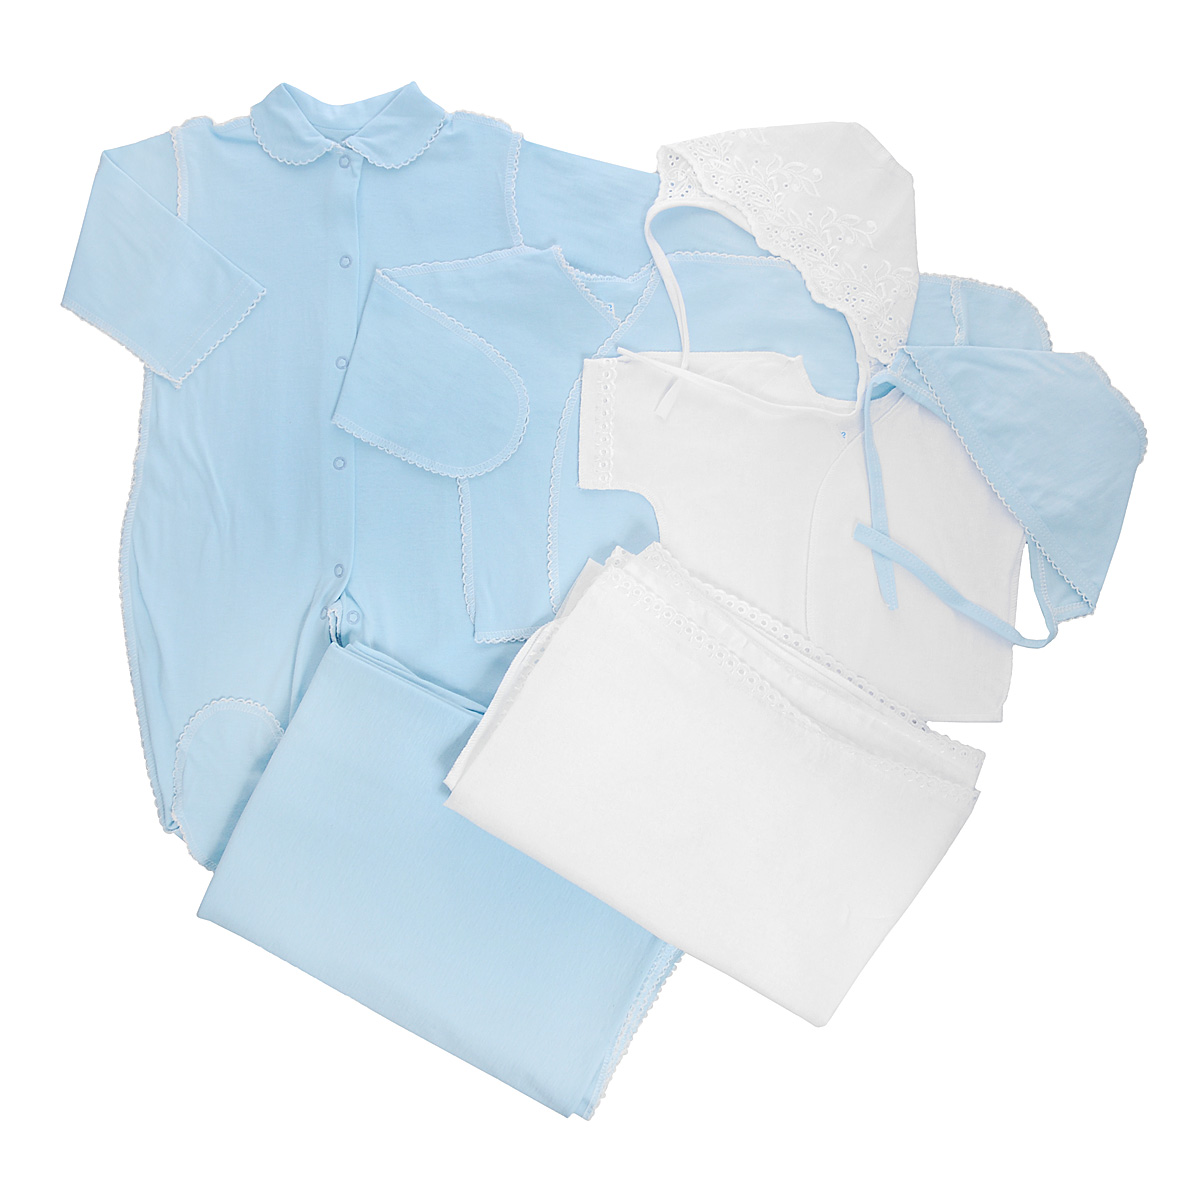 Комплект для новорожденного Трон-Плюс, 7 предметов, цвет: белый, голубой. 3472. Размер 56, 1 месяц